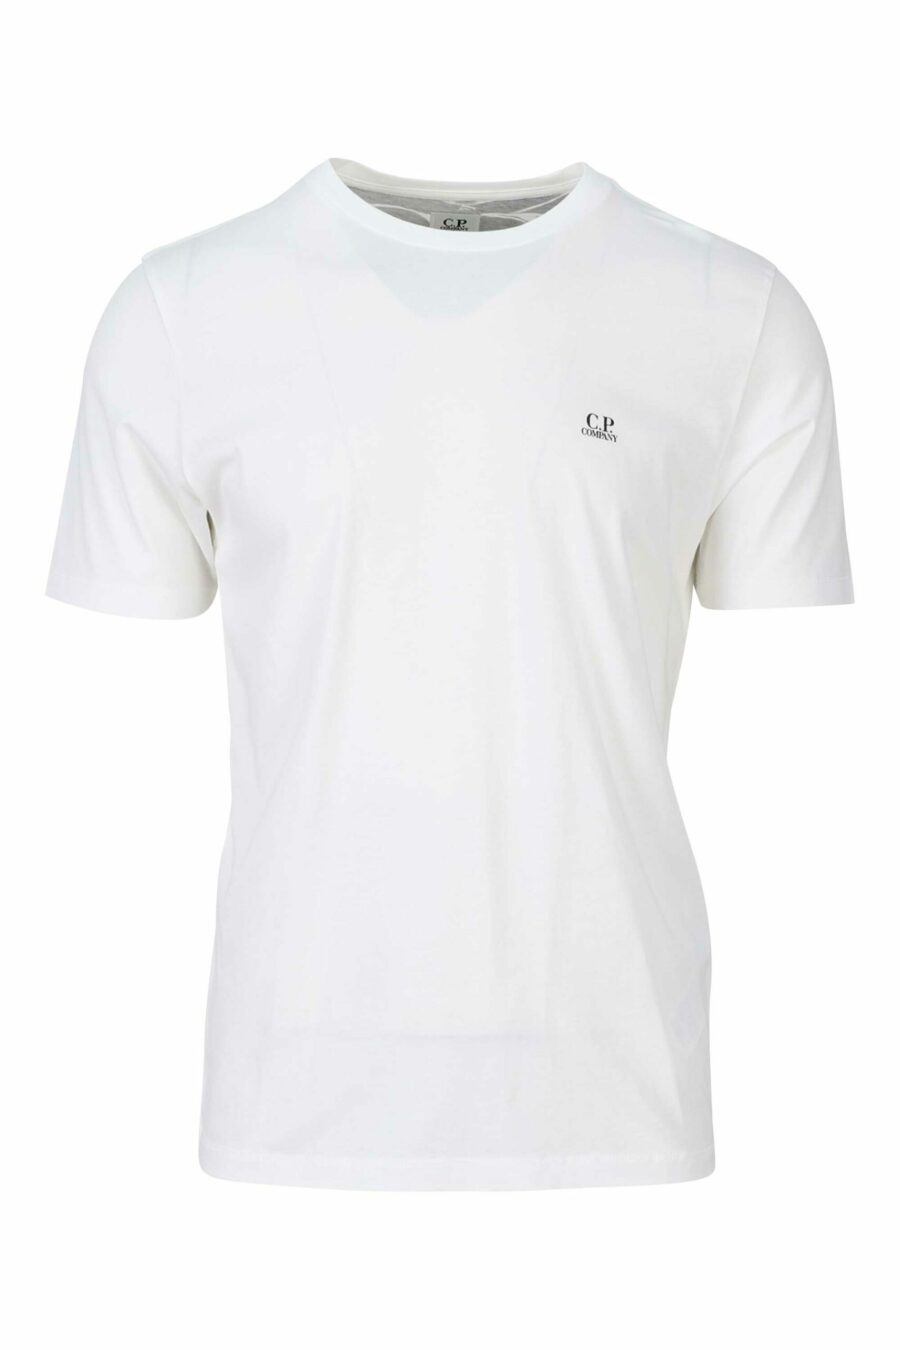 Weißes T-Shirt mit Kapuze und Logoaufnäher - 7620943570397 1 skaliert